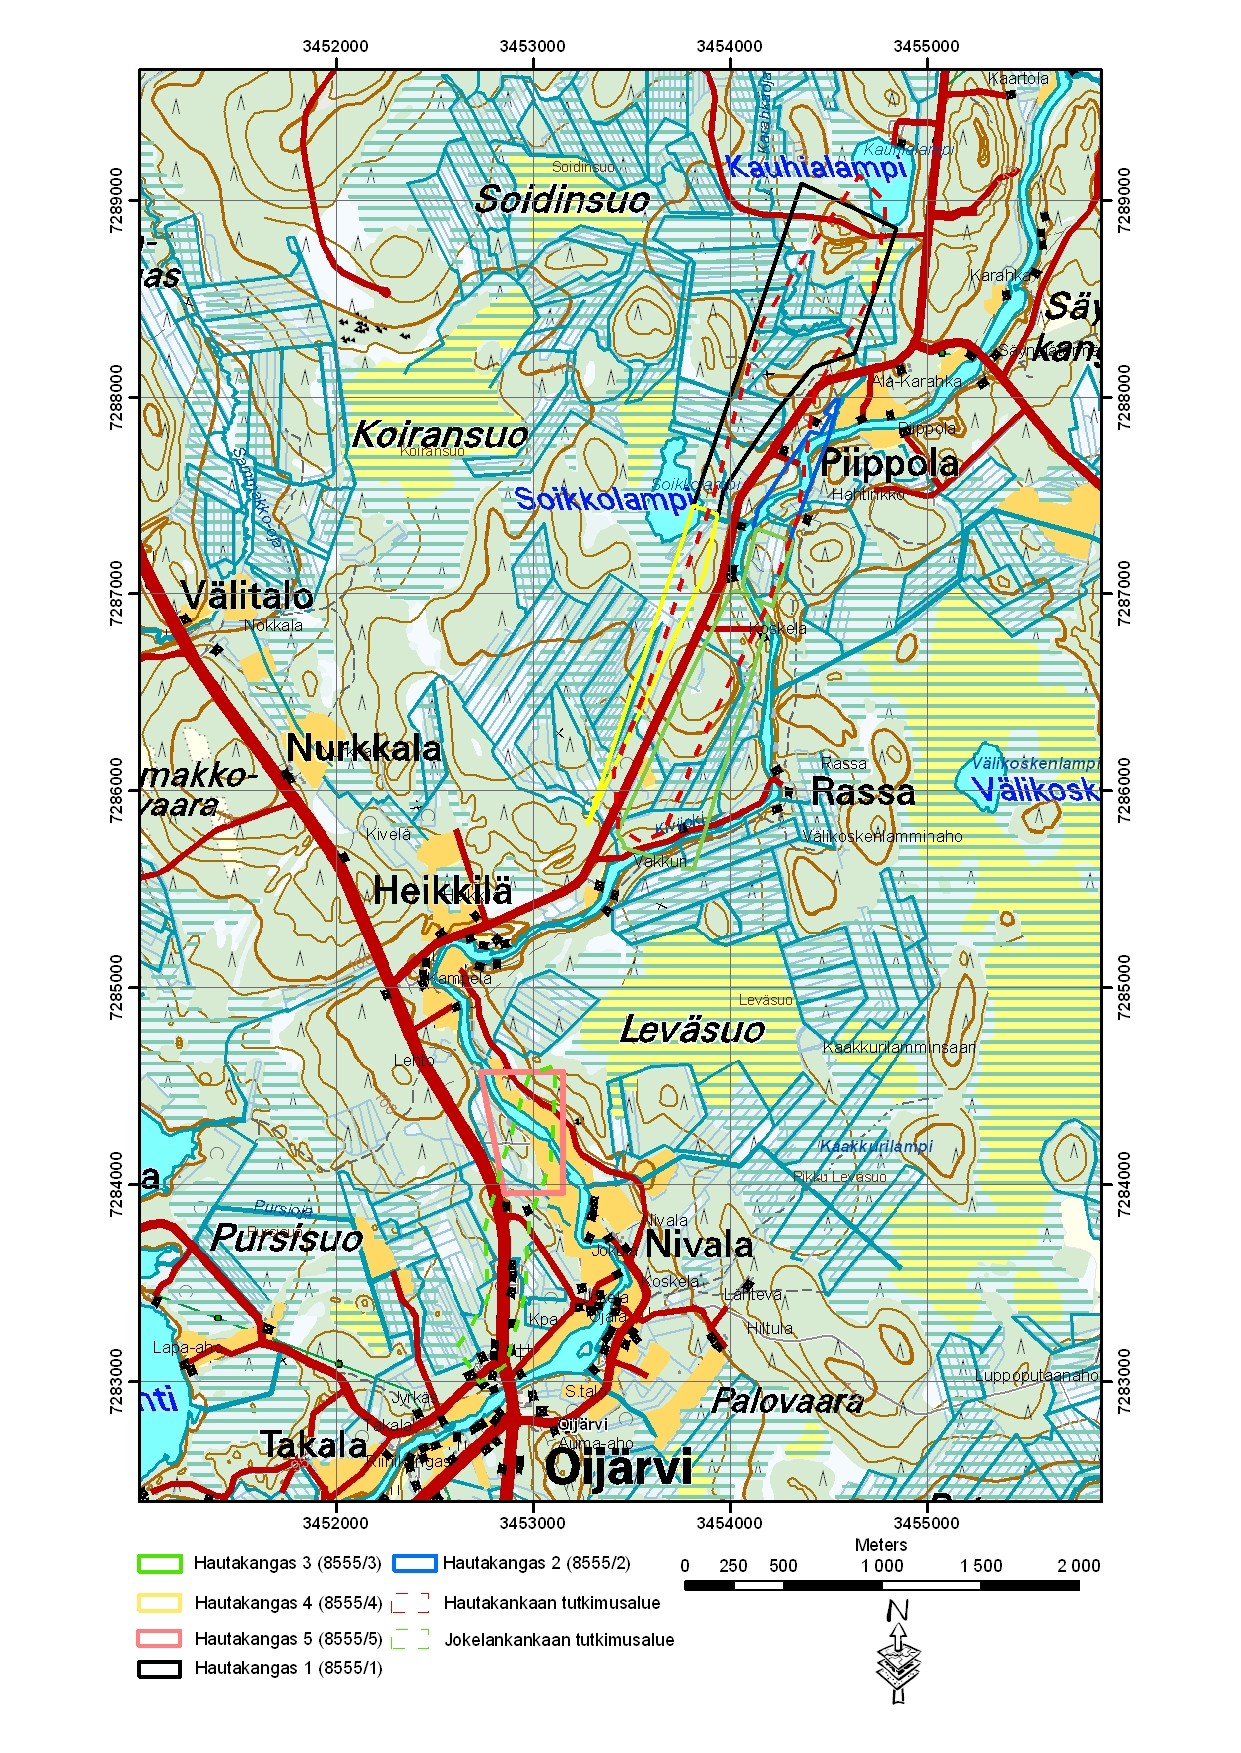 3 Kuva 2. Hautakangas 1 5 valtausalueet topografisella kartalla sekä Hautakankaan tutkimusalue (punainen katkoviiva) ja Jokelankankaan tutkimusalue (vihreä katkoviiva).